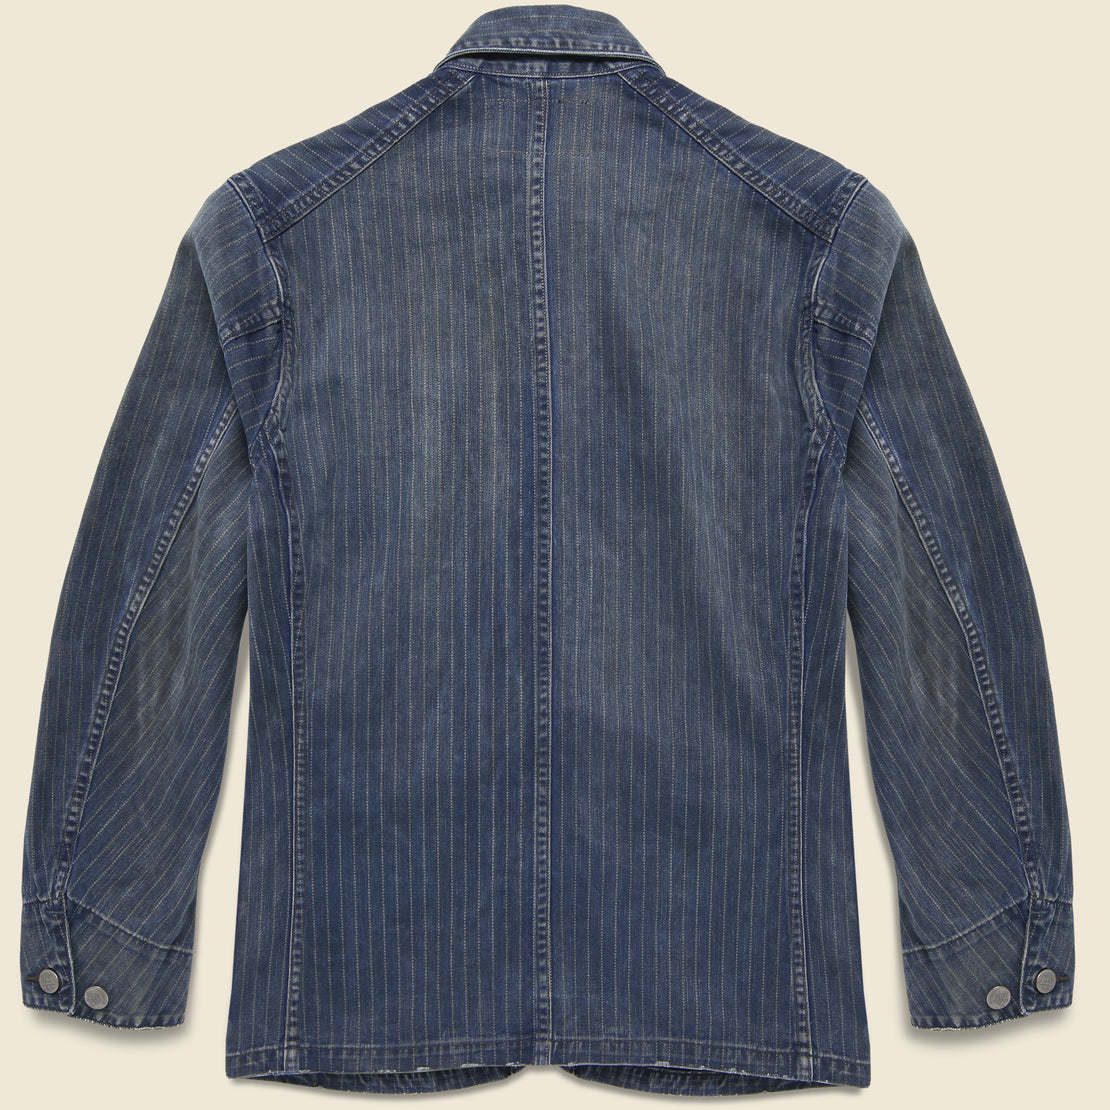 Mechanic Chore Coat - Black Indigo Wash - RRL - STAG Provisions - Outerwear - Shirt Jacket